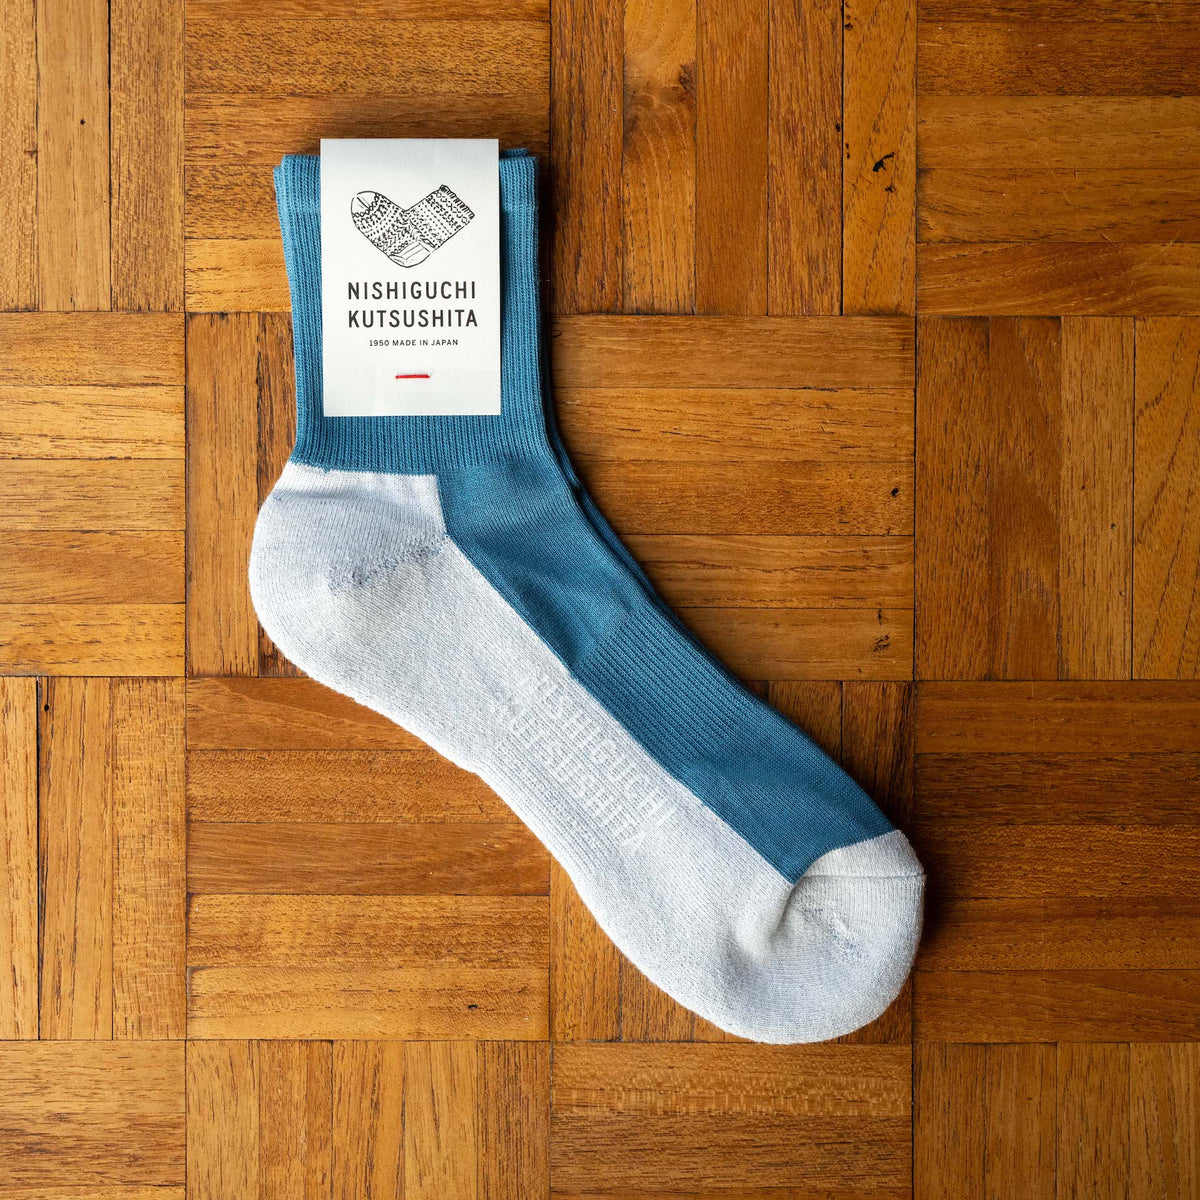 Nishiguchi Kutsushita Cotton Cashmere Wallking Socks in Lake Blue colour